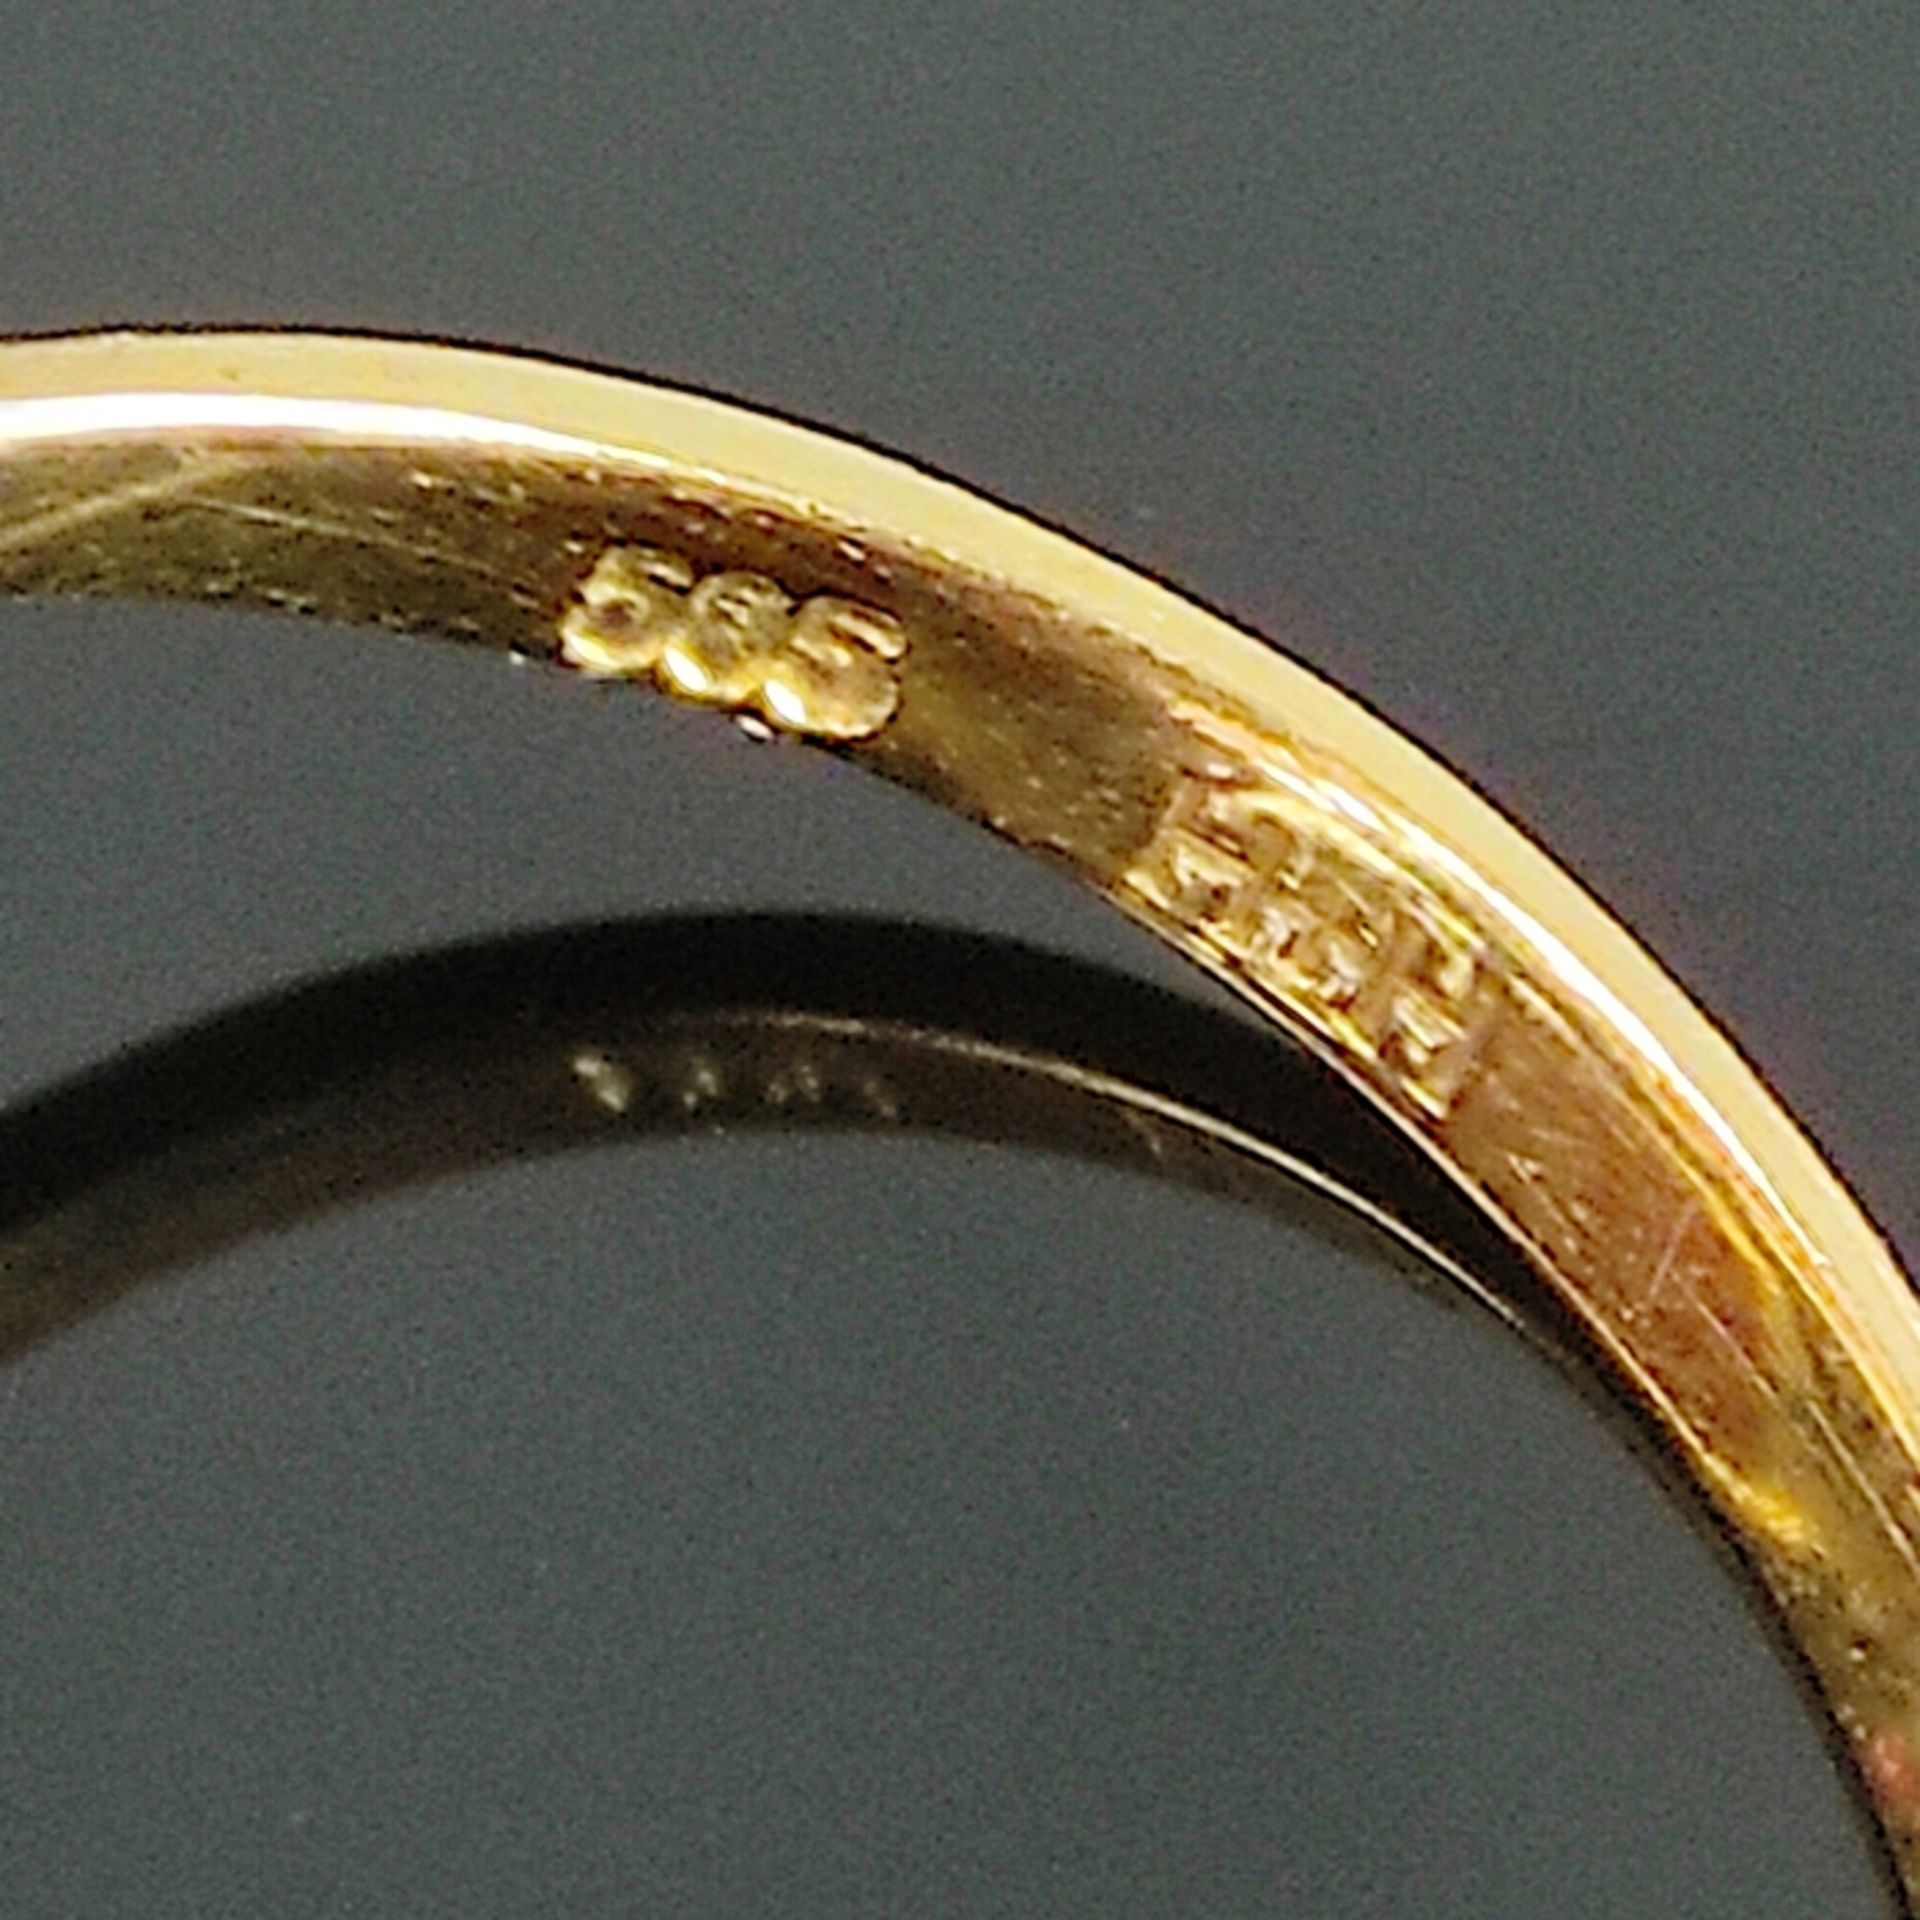 Korallen-Gold-Ring 585/14K Gelbgold (punziert), 5,1g, mittig Korallencabochon, Maße ca. 13,4x11mm,  - Bild 3 aus 3